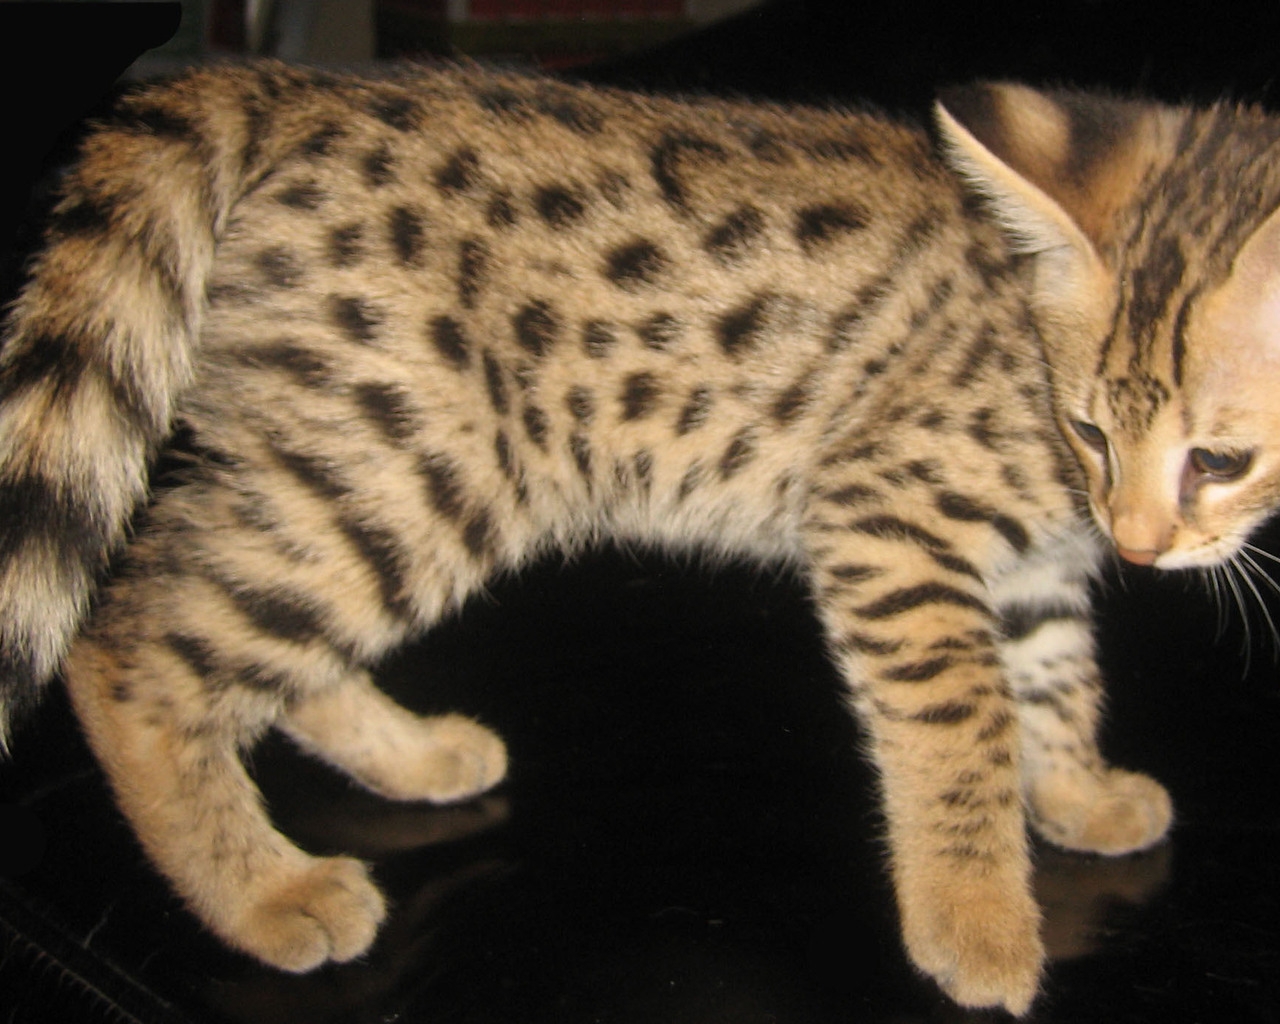 Savannah Kitten for 1280 x 1024 resolution